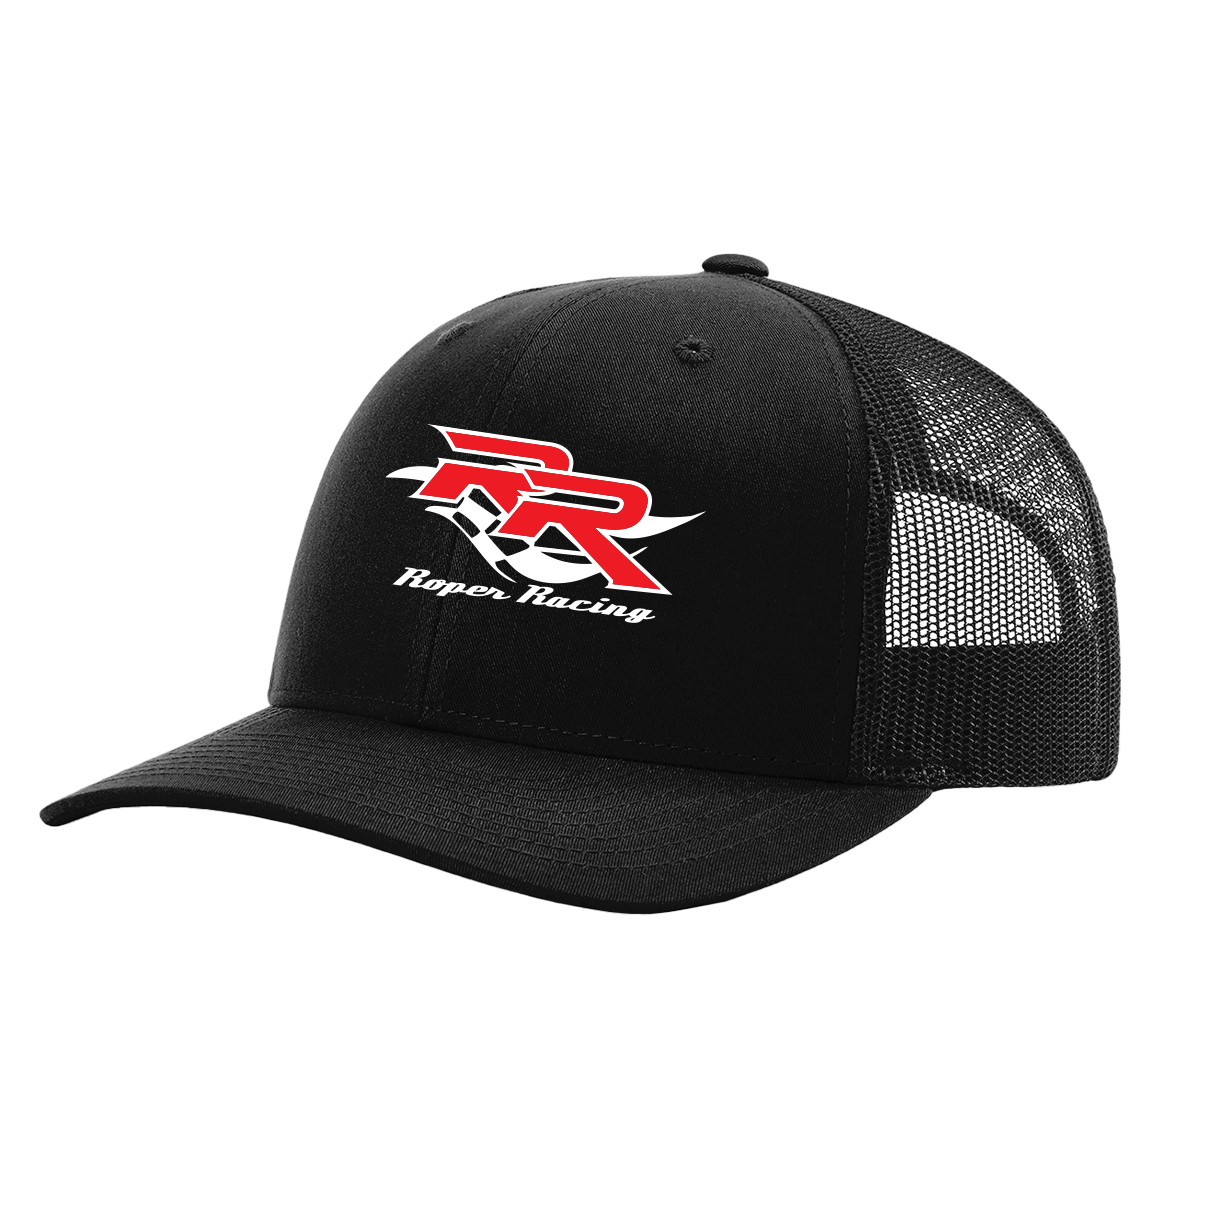 Roper Racing Adjustable Hat